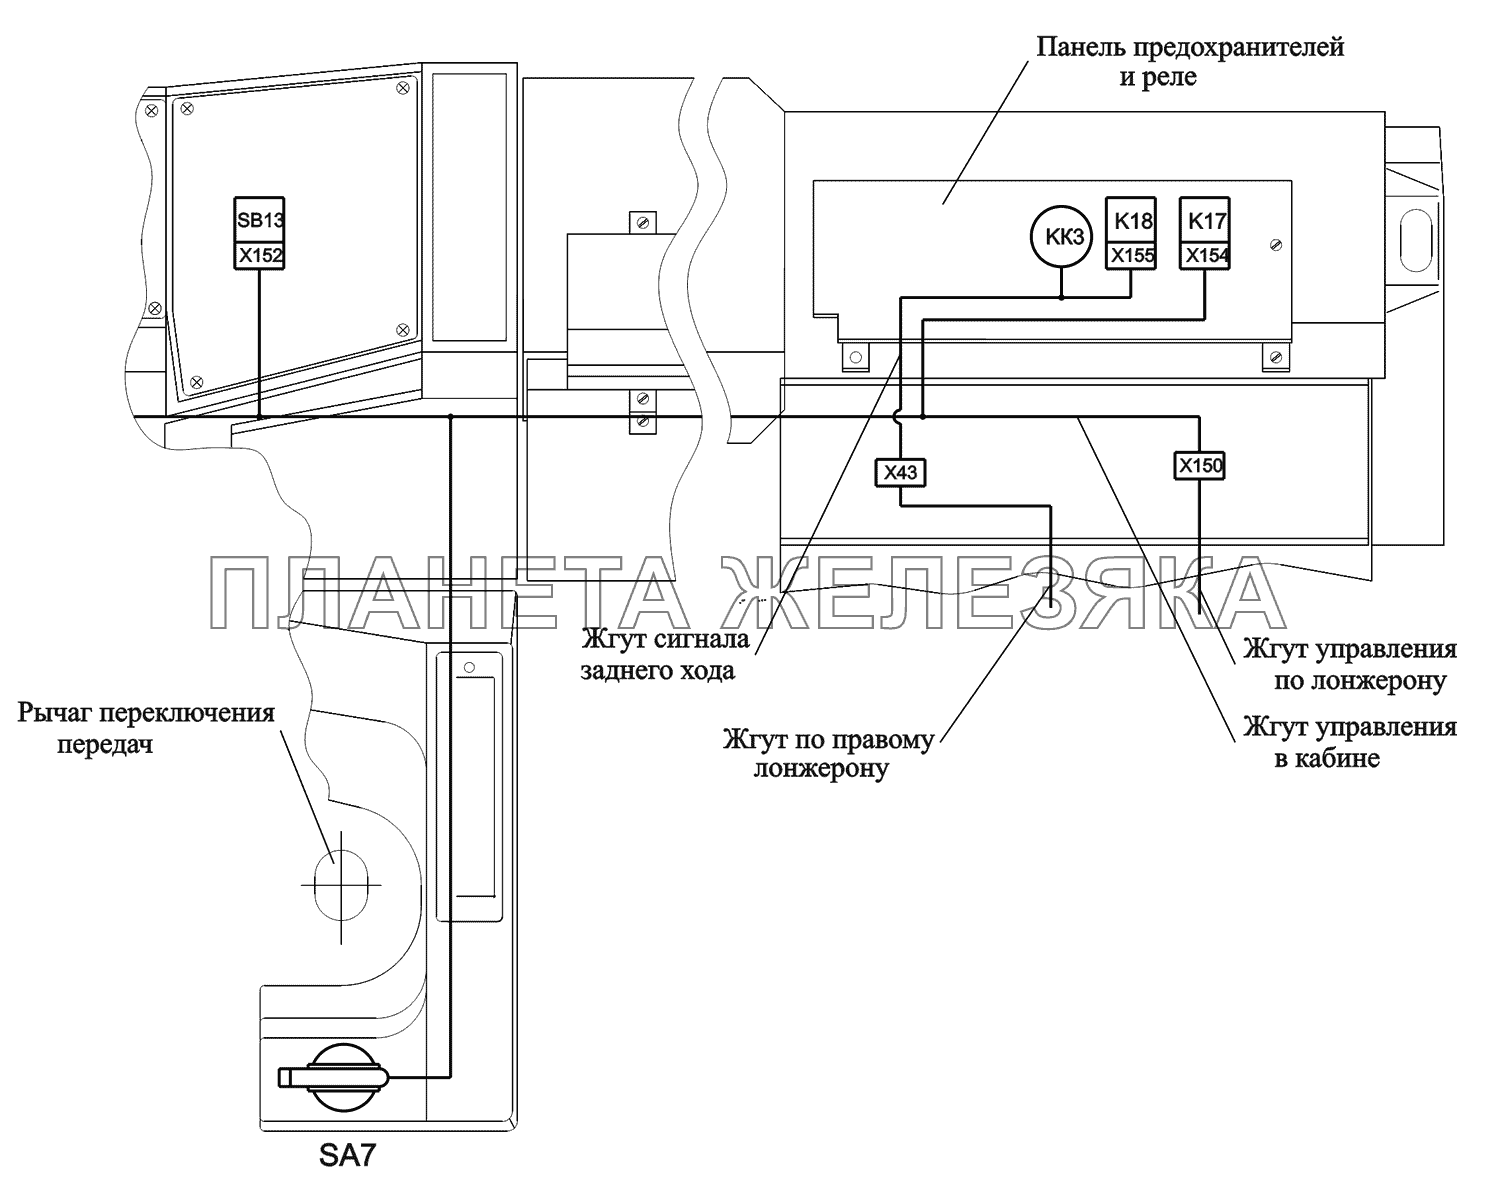 Расположение разъемов и элементов электрооборудовния управления подъемов и опусканием платформы МАЗ-551669